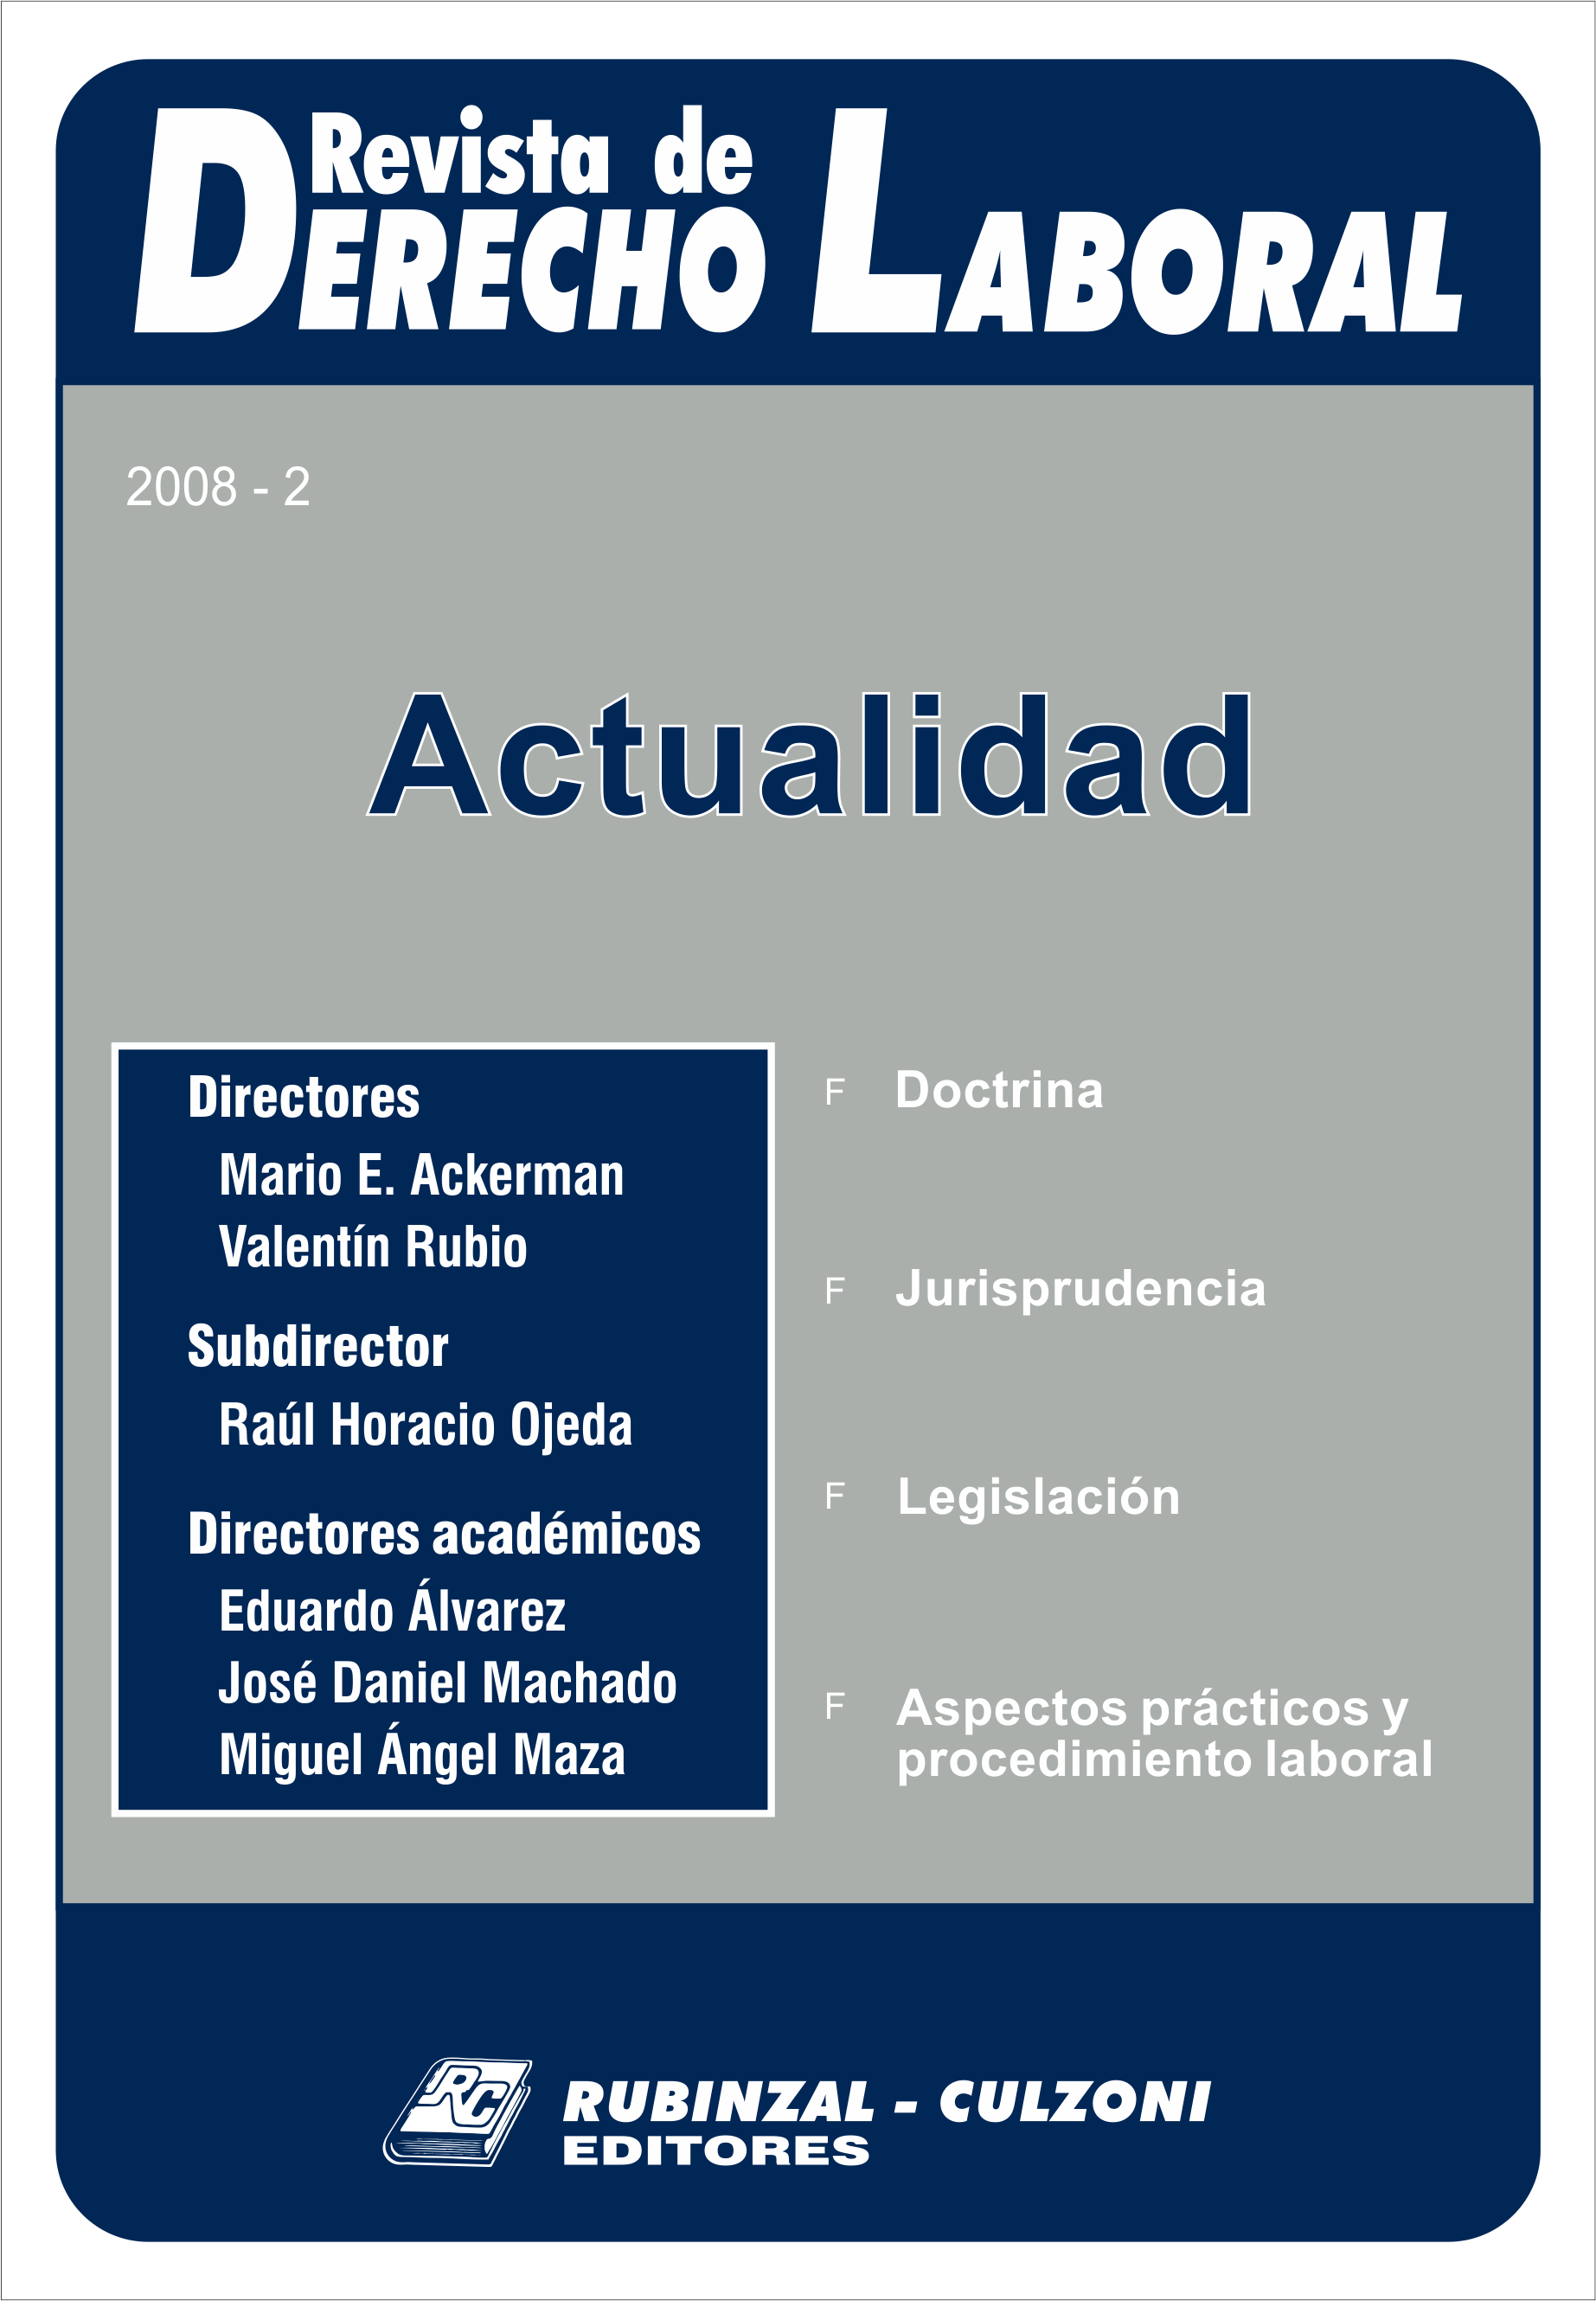 Revista de Derecho Laboral Actualidad - Año 2008 - 2